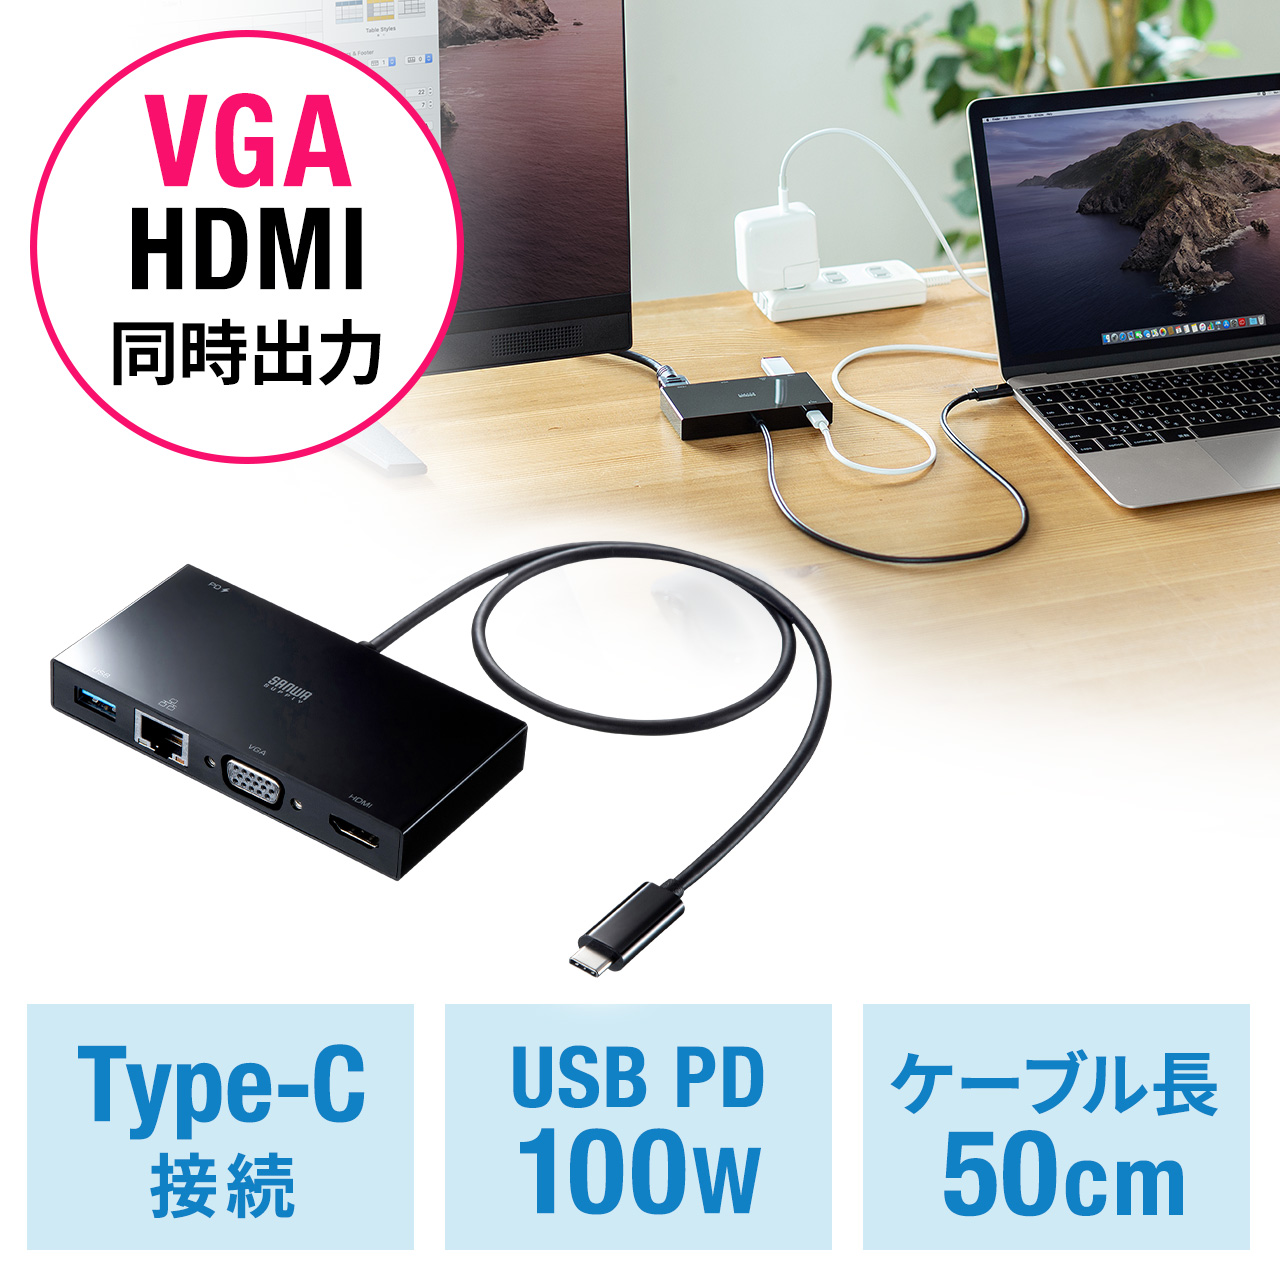 USB Type-Cモバイルドッキングステーション HDMI VGA 同時出力 PD100W LAN イーサネット USB3.1Gen1  ケーブル長50cm ブラック 400-HUBC7BKの販売商品 通販ならサンワダイレクト